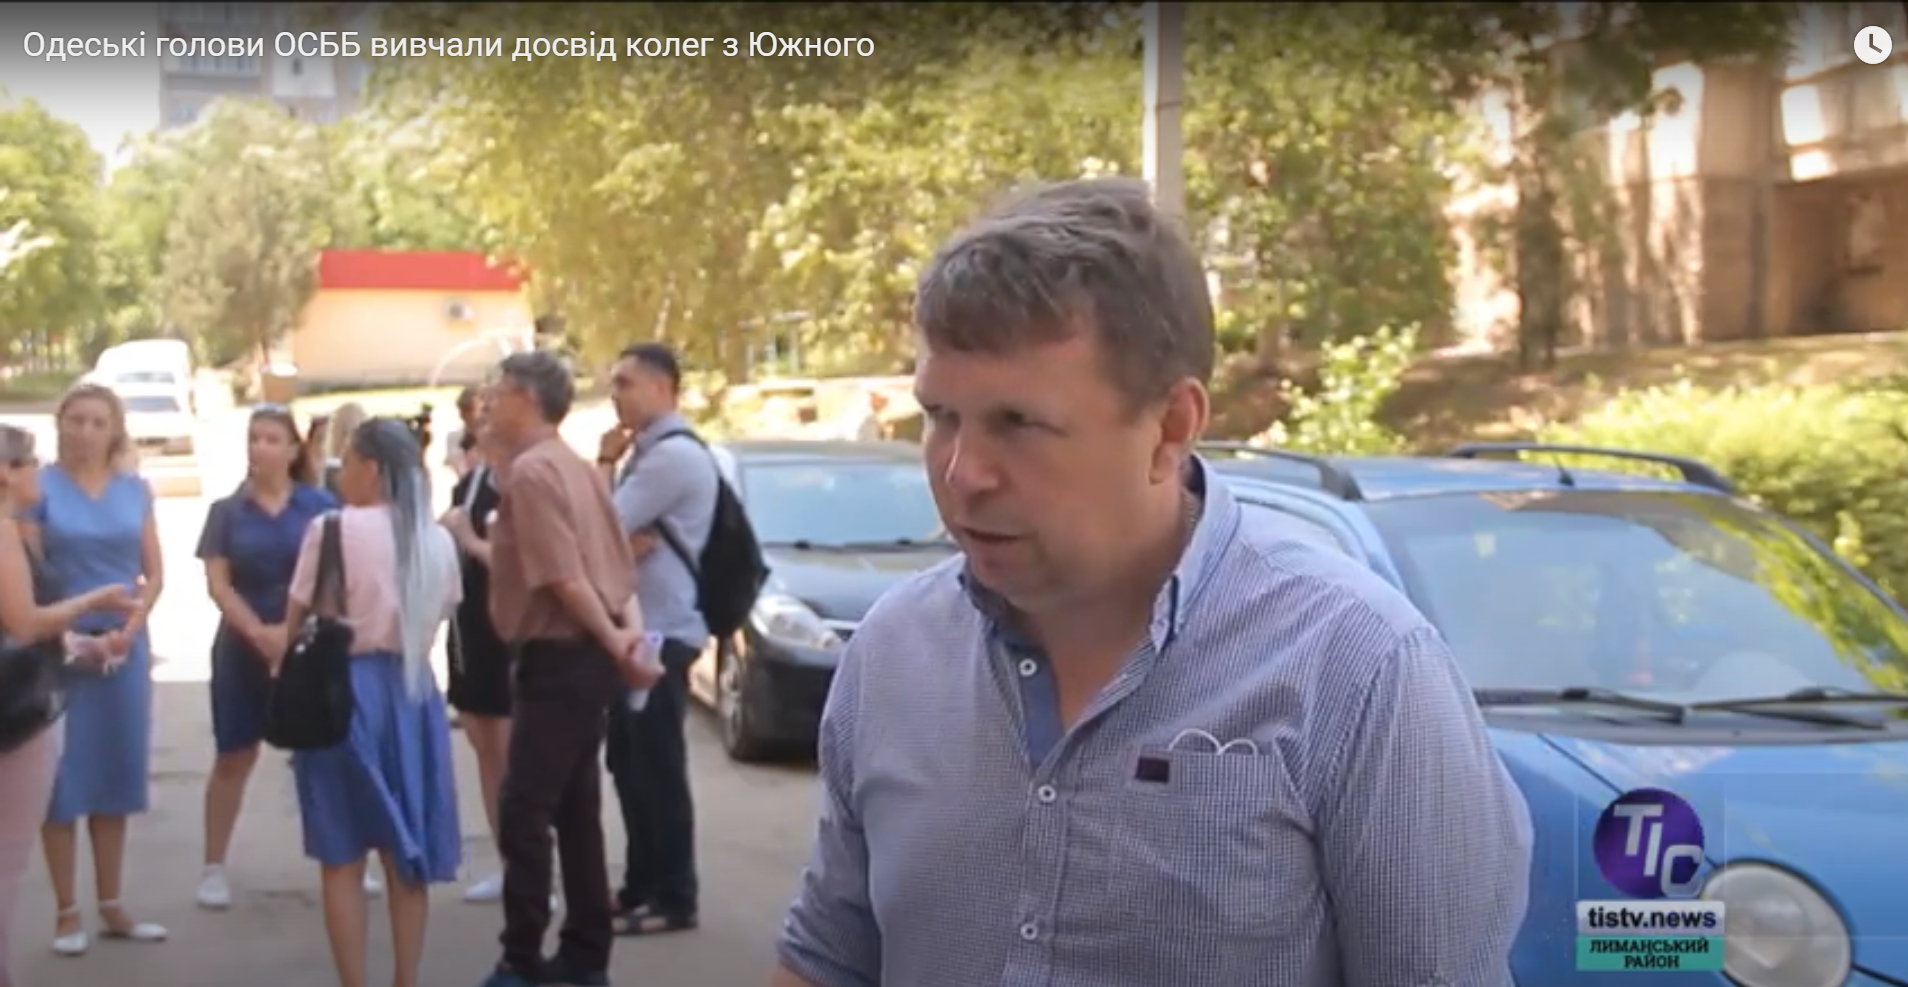 Одеські голови ОСББ вивчали досвід колег з Южного